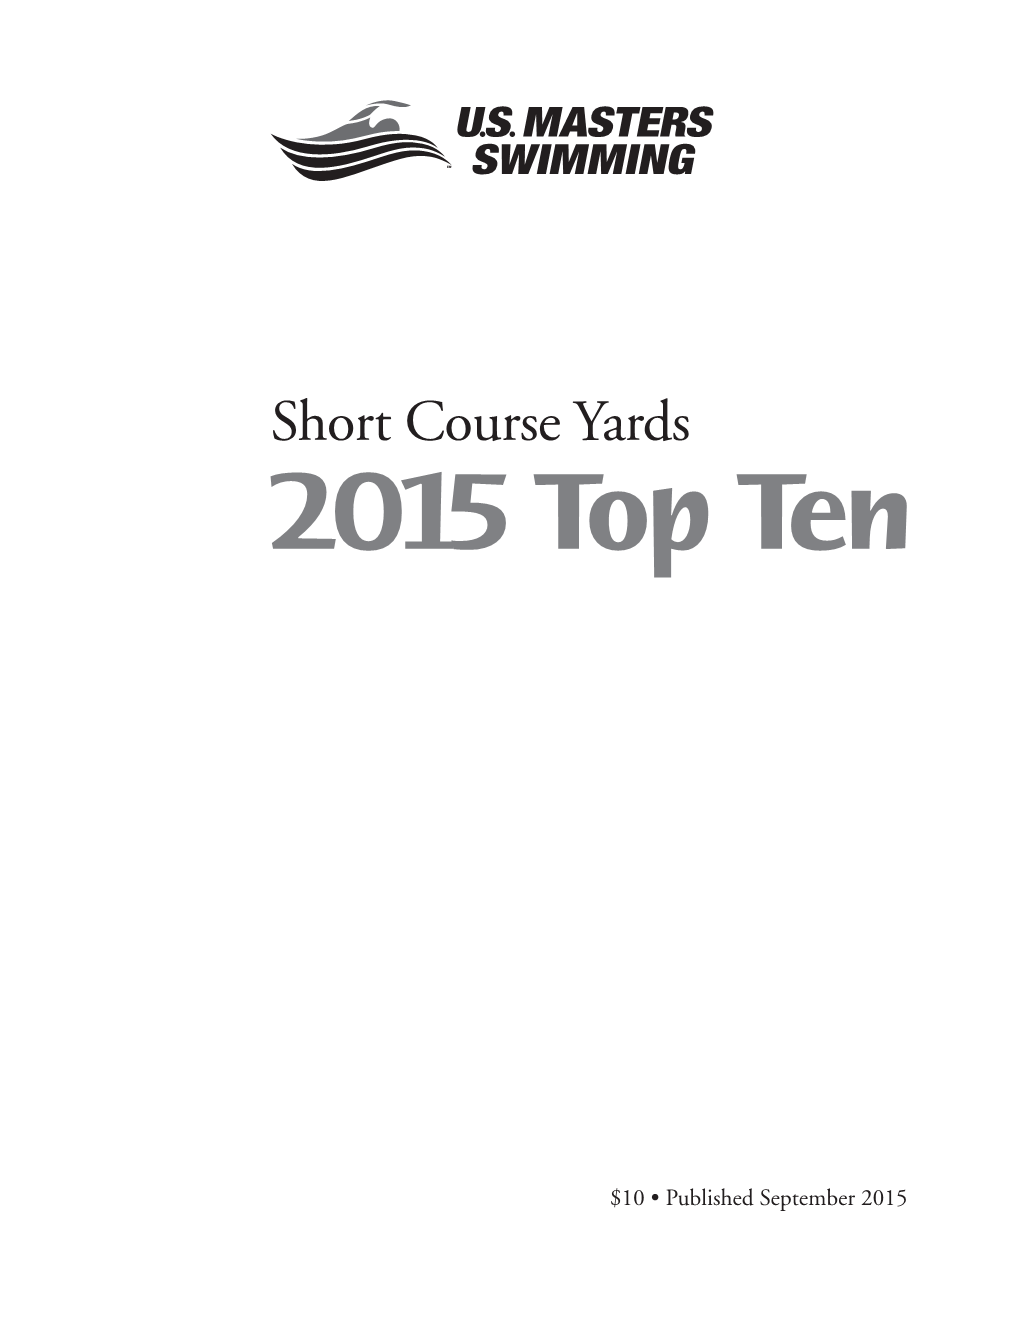 Short Course Yards 2015 Top Ten